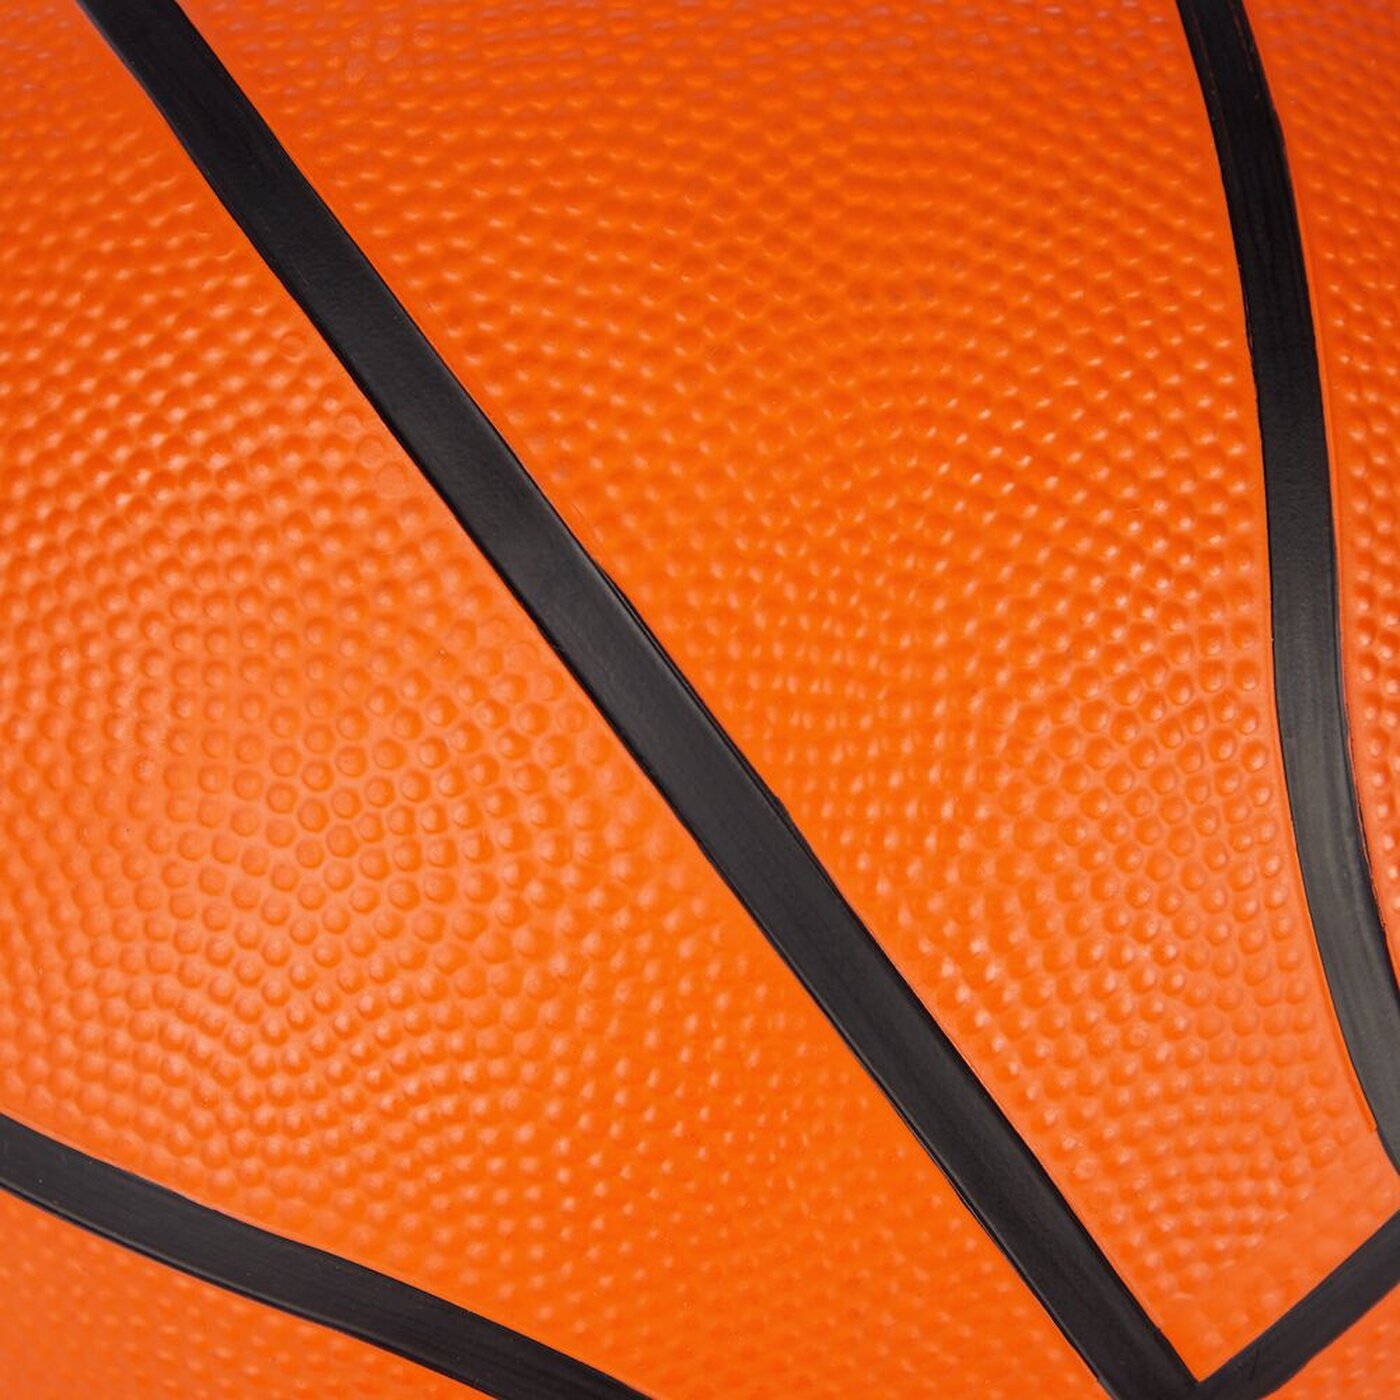 50 PRO TOUCH online kaufen Basketball Harlem